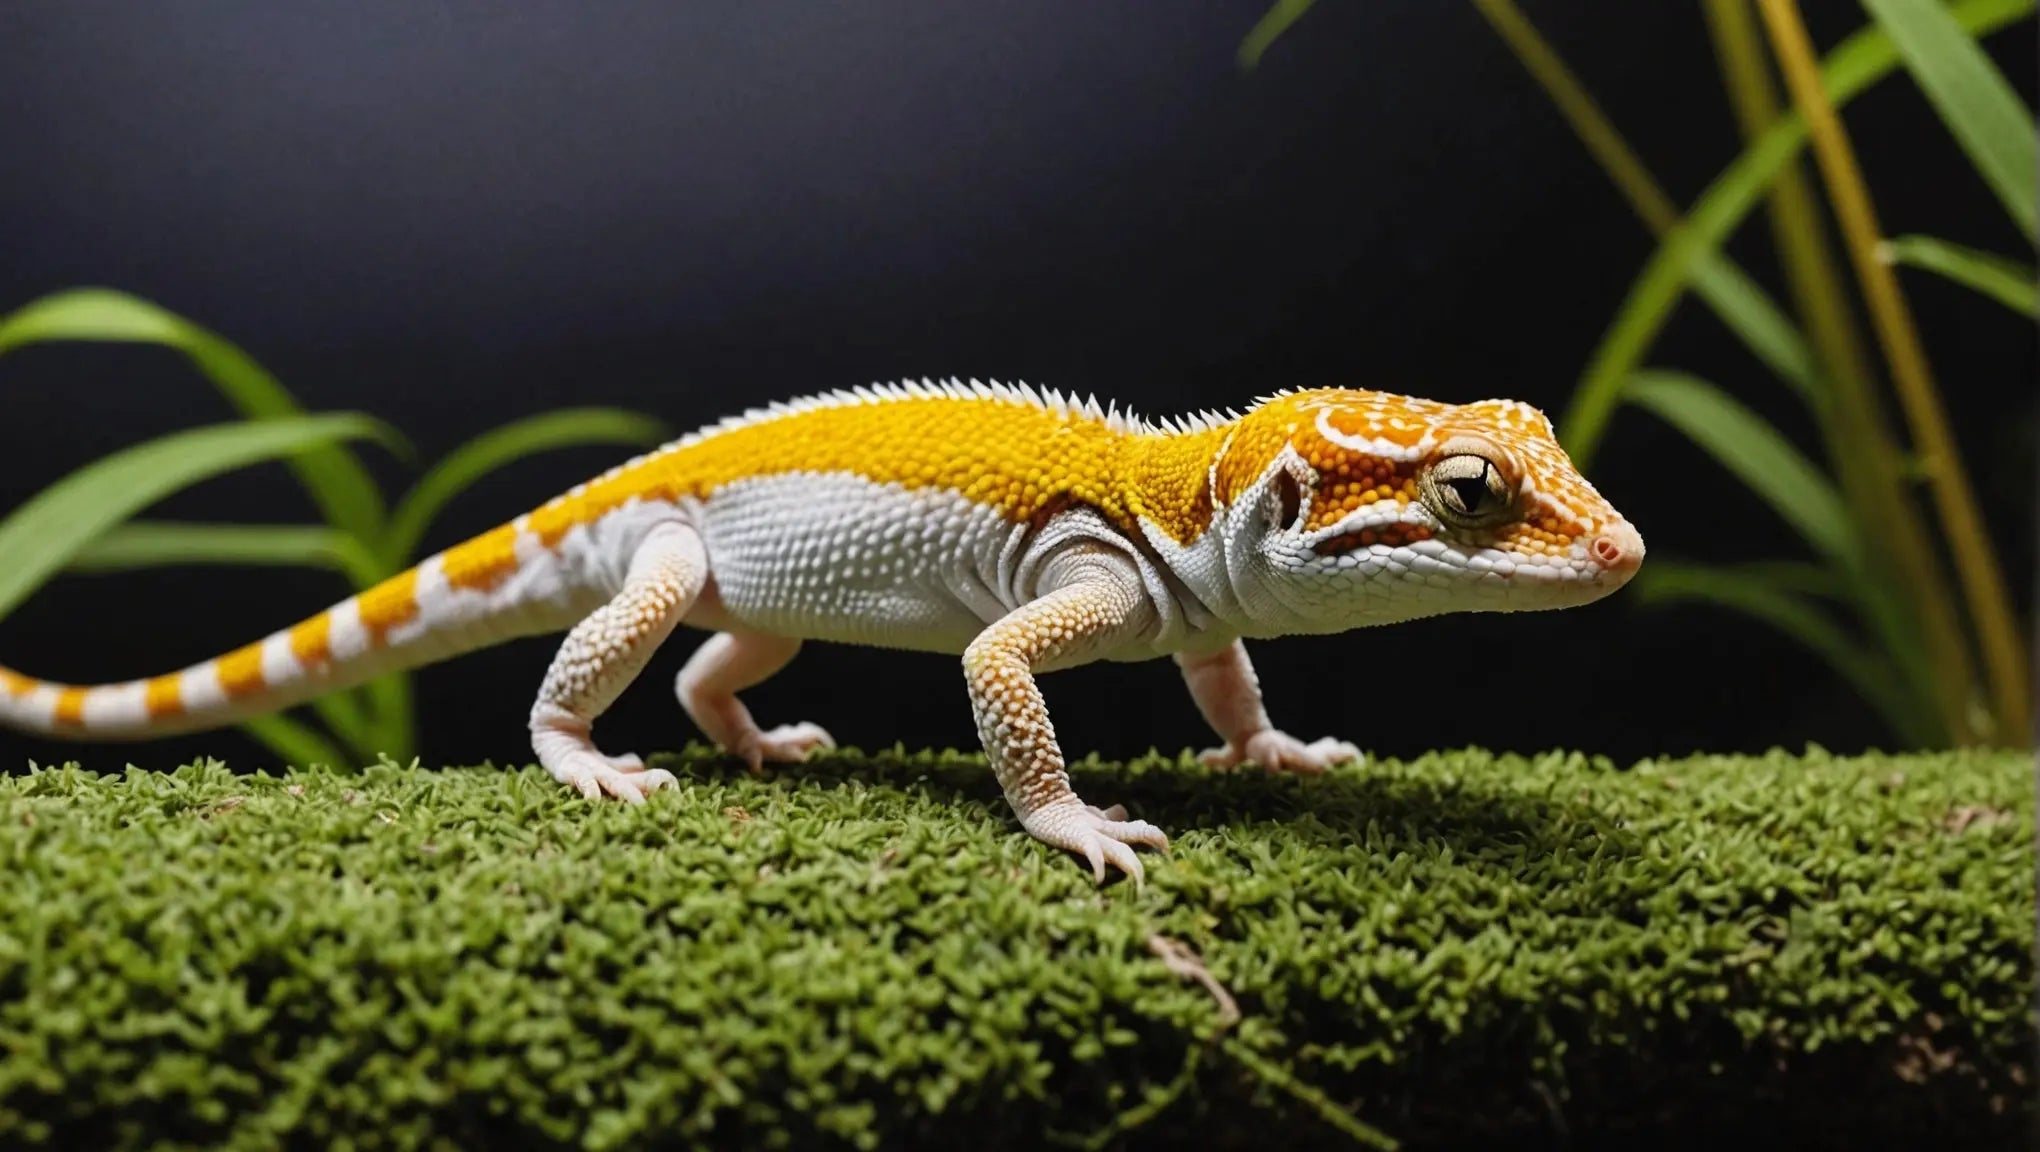 Leopard Gecko Care: Tips for UVA Lighting